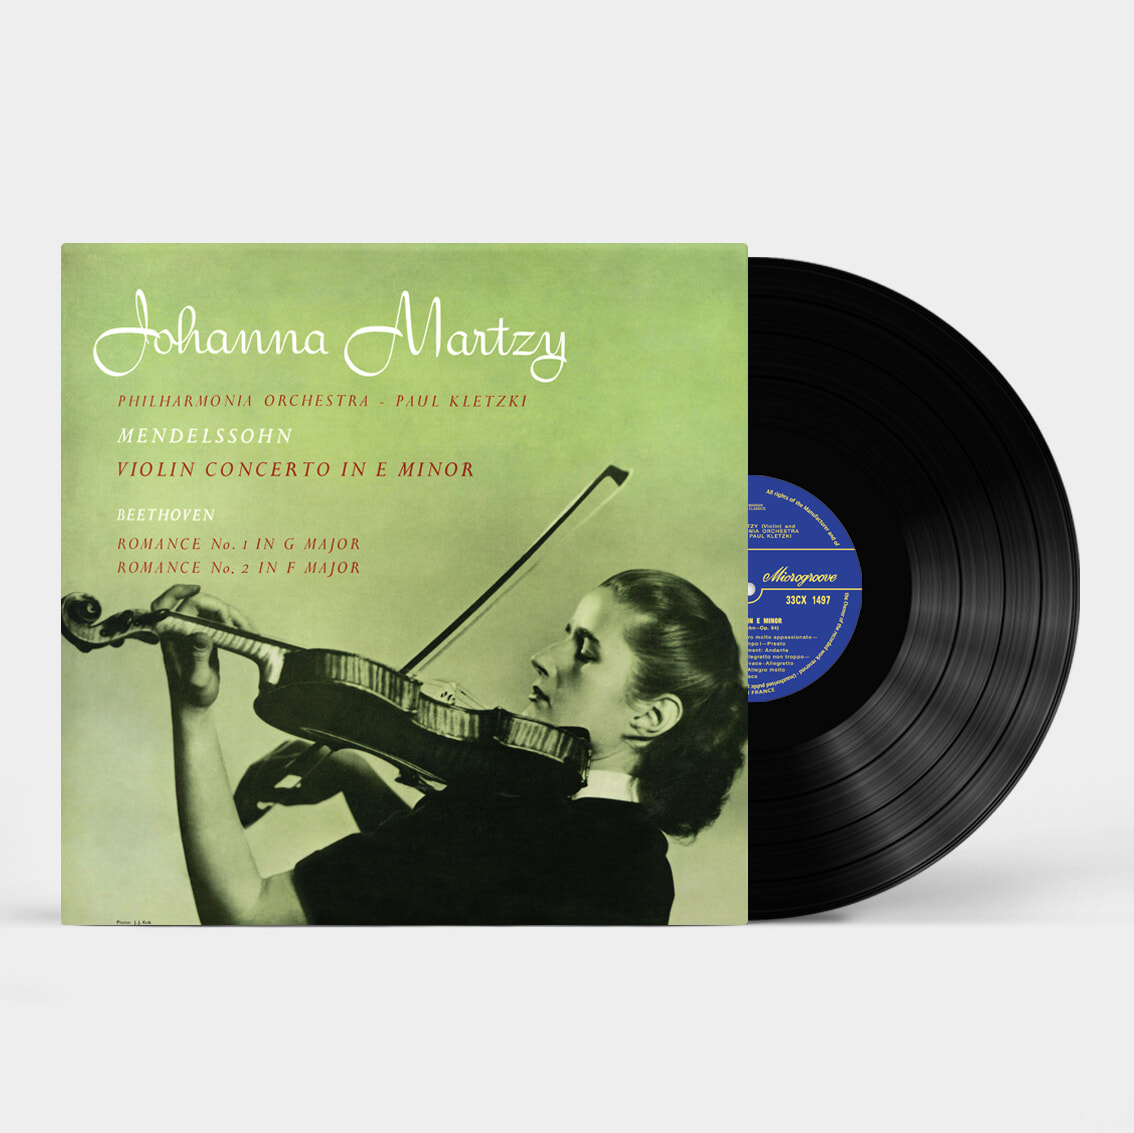 Johanna Martzy 멘델스존: 바이올린 협주곡 / 베토벤: 로망스 - 요한나 마르치 (Mendelssohn: Violin Concerto Op.64) [LP] 